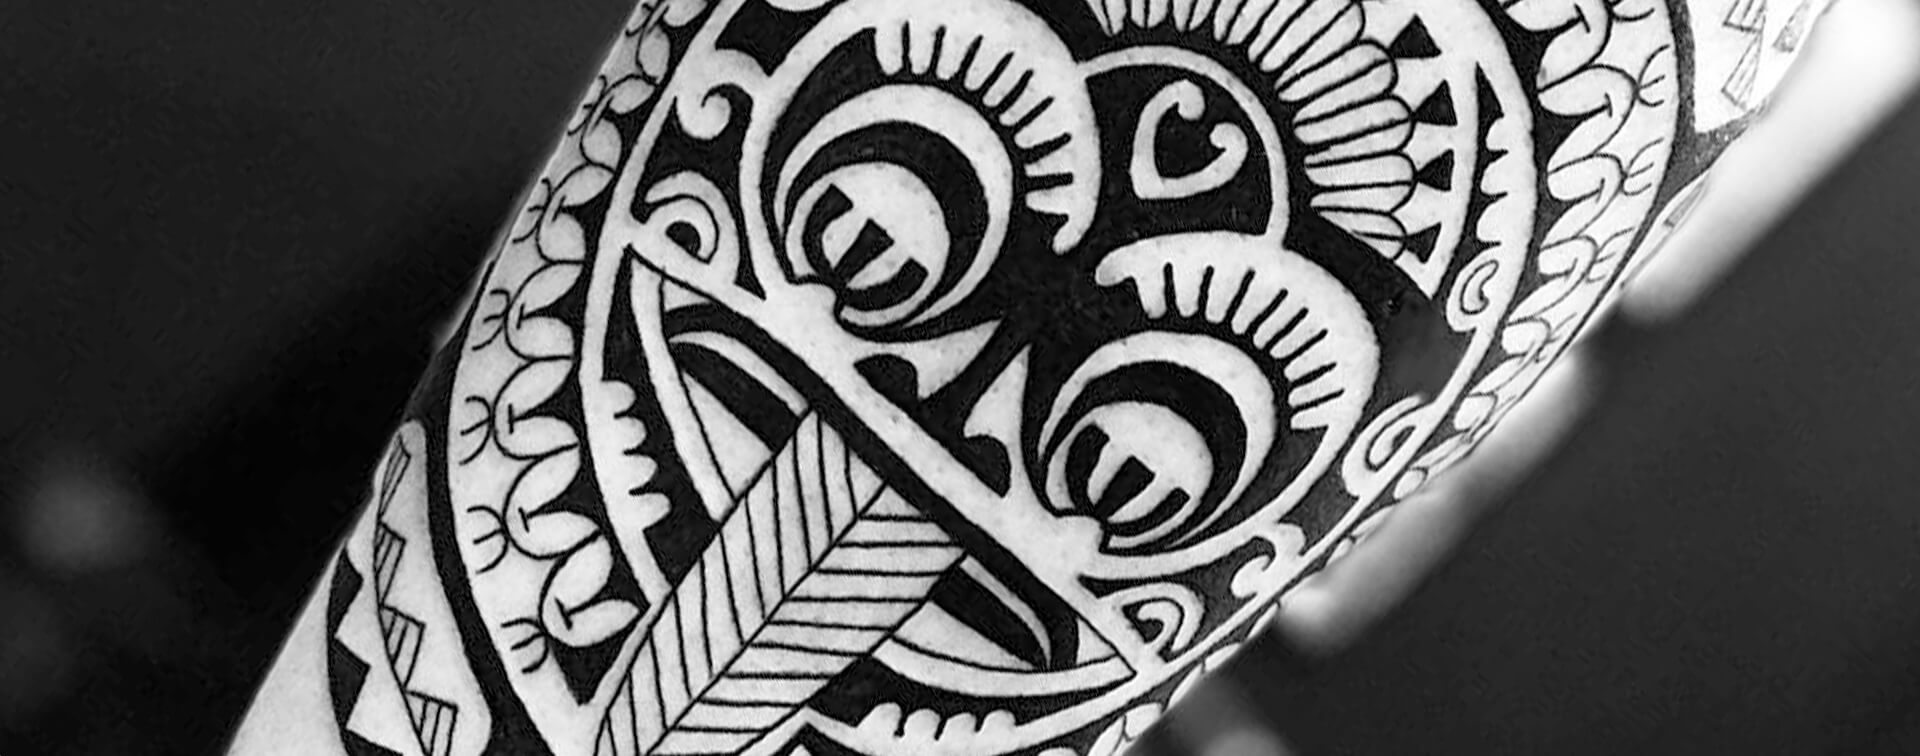 maori warrior - Google Search  Significado da tatuagem maori, Povo maori,  Maori